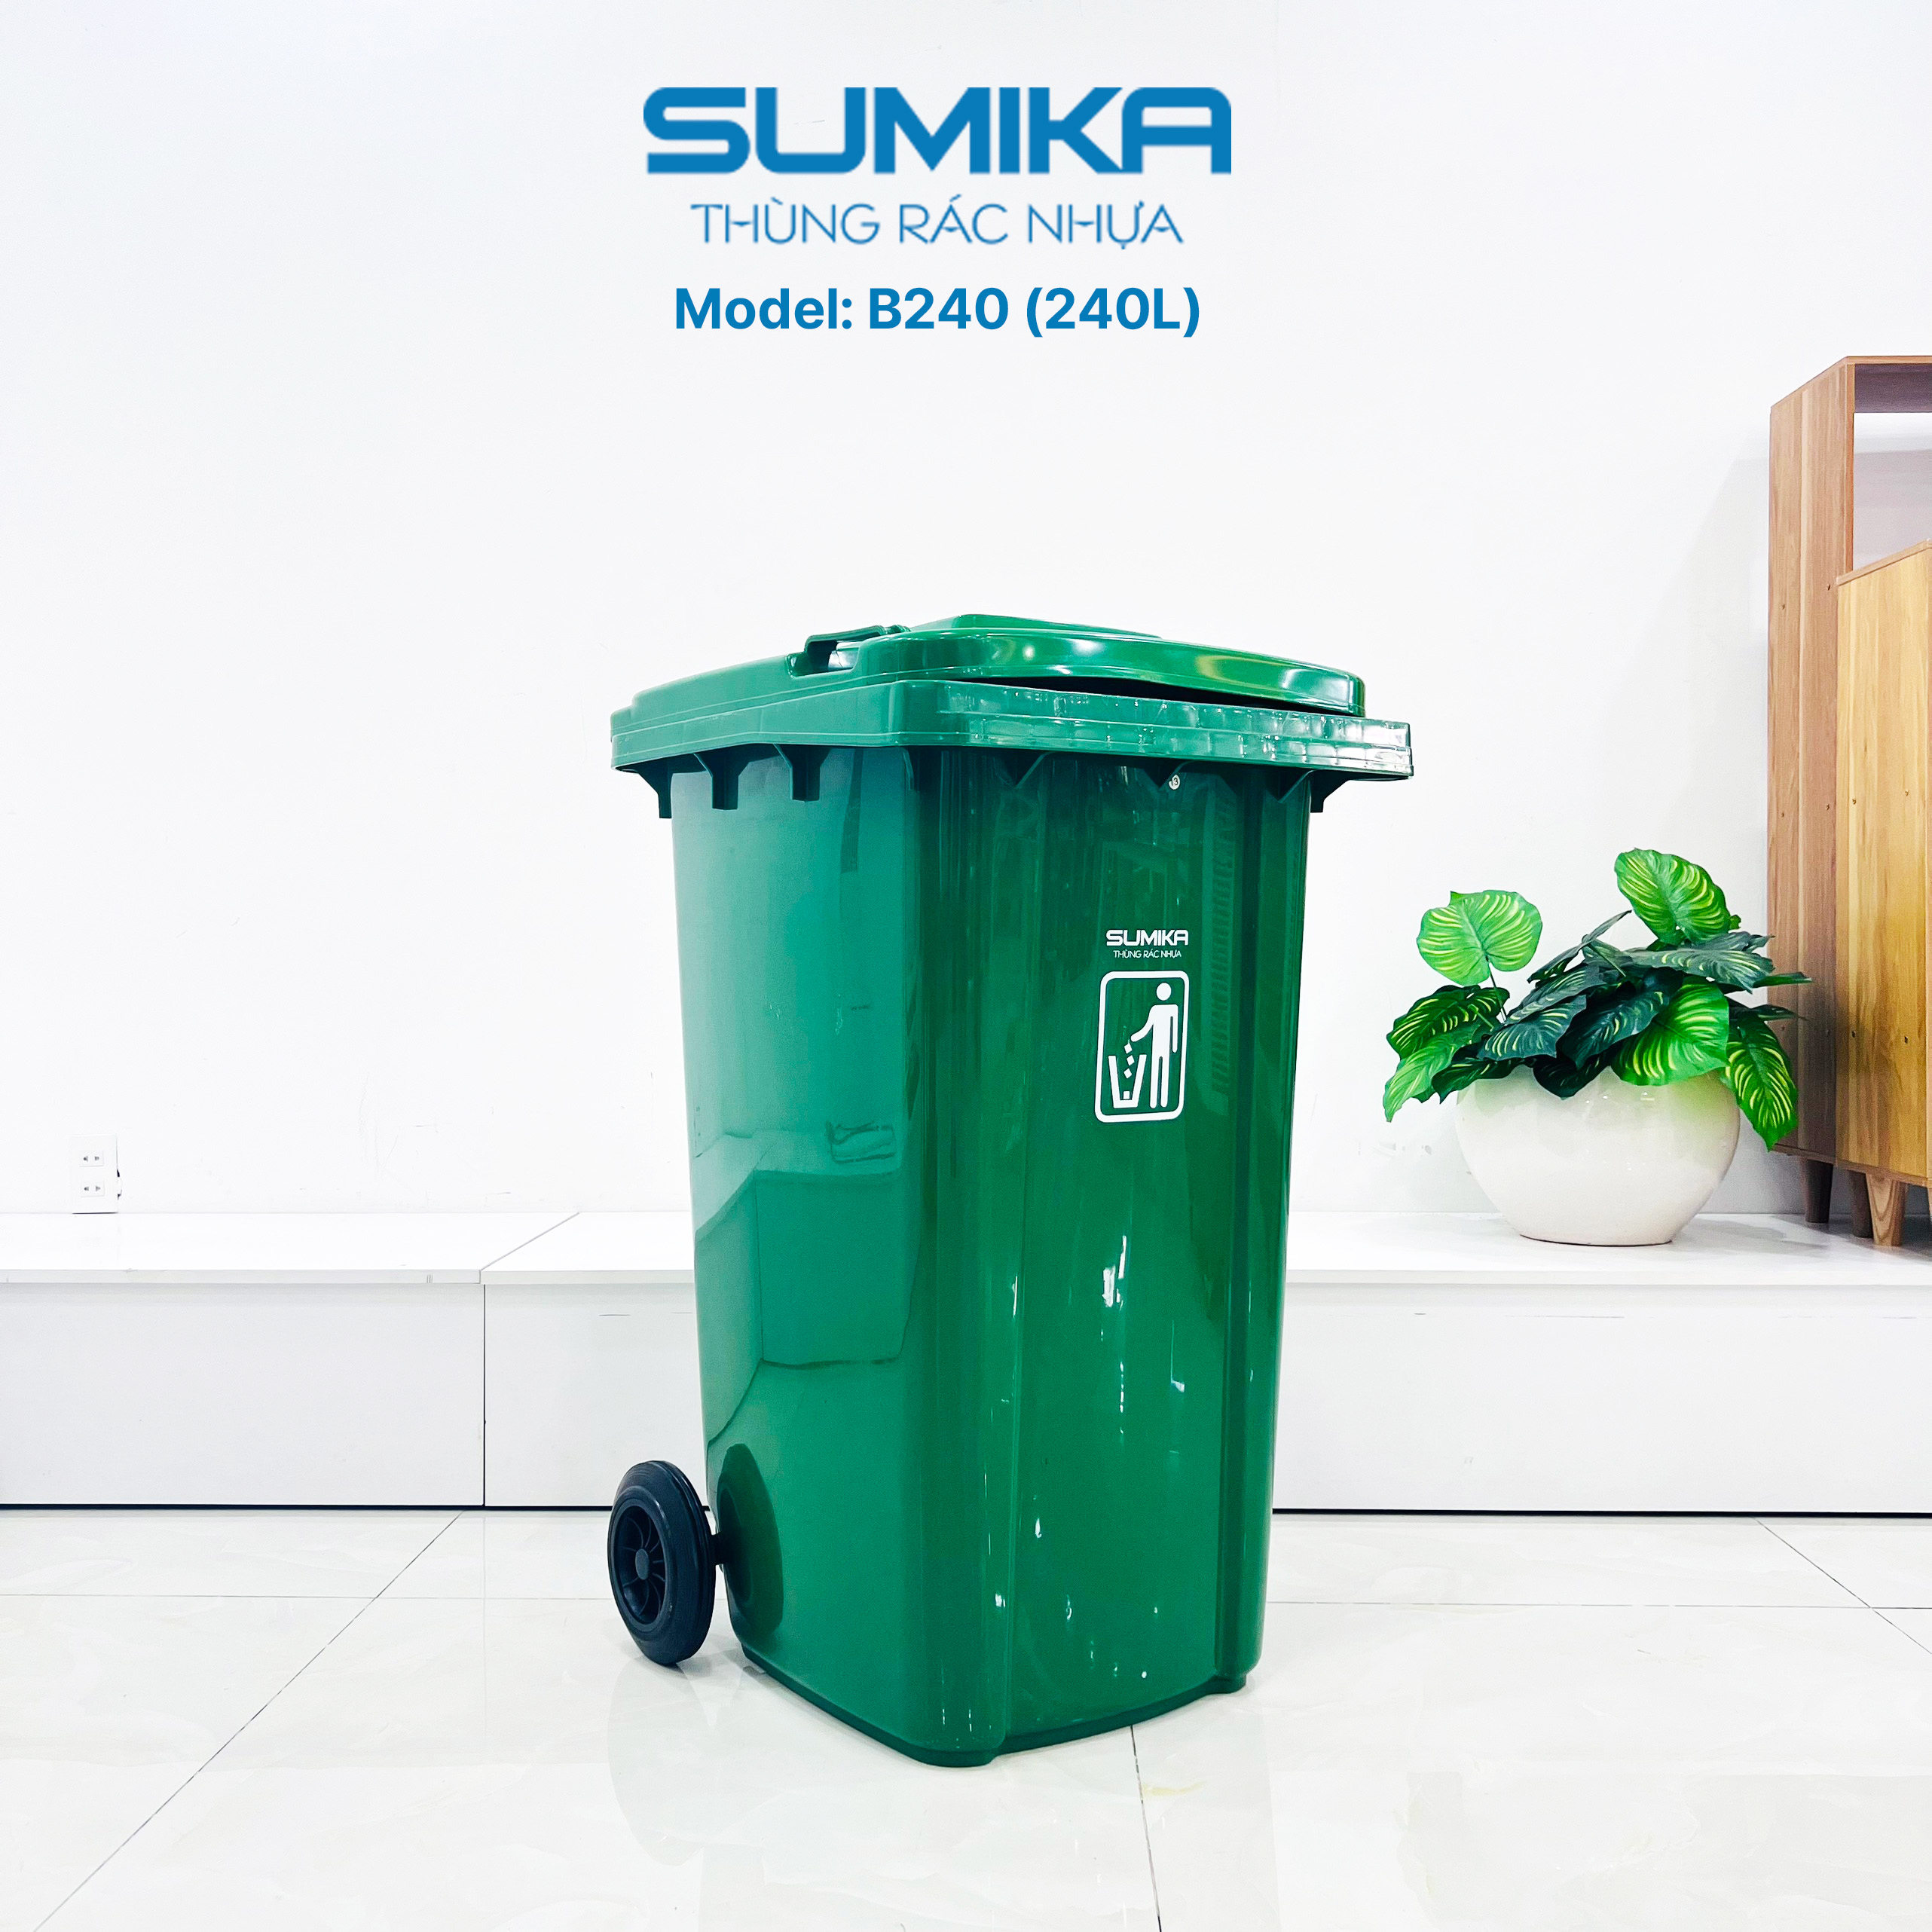 Thùng rác nhựa công nghiệp SUMIKA B240, dung tích 240L (Green)